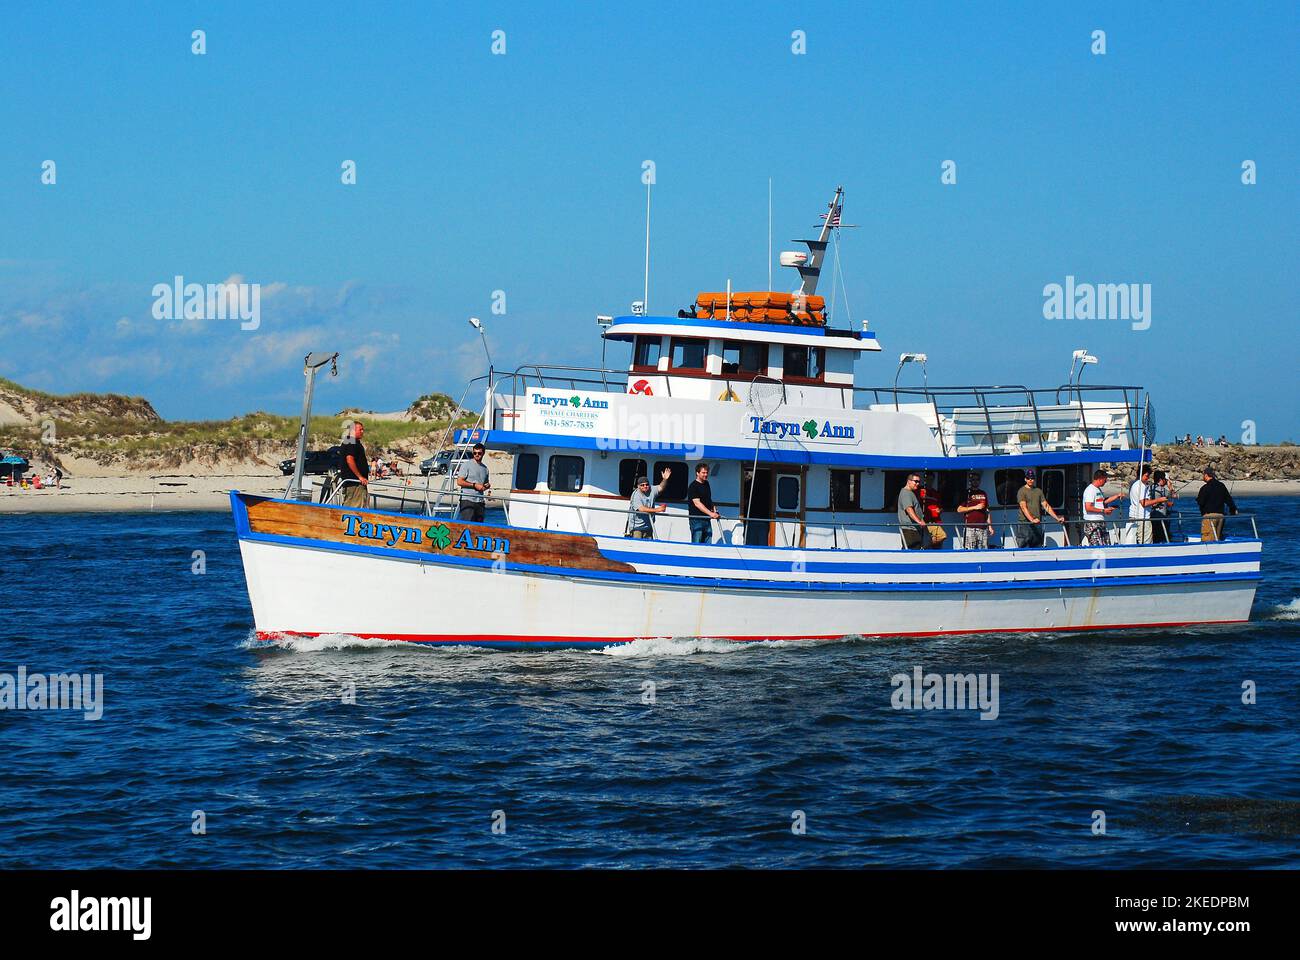 Un bateau de pêche affrété, le Taryn Ann, transporte les pêcheurs vers leur destination maritime pour une journée de loisirs sur l'eau Banque D'Images